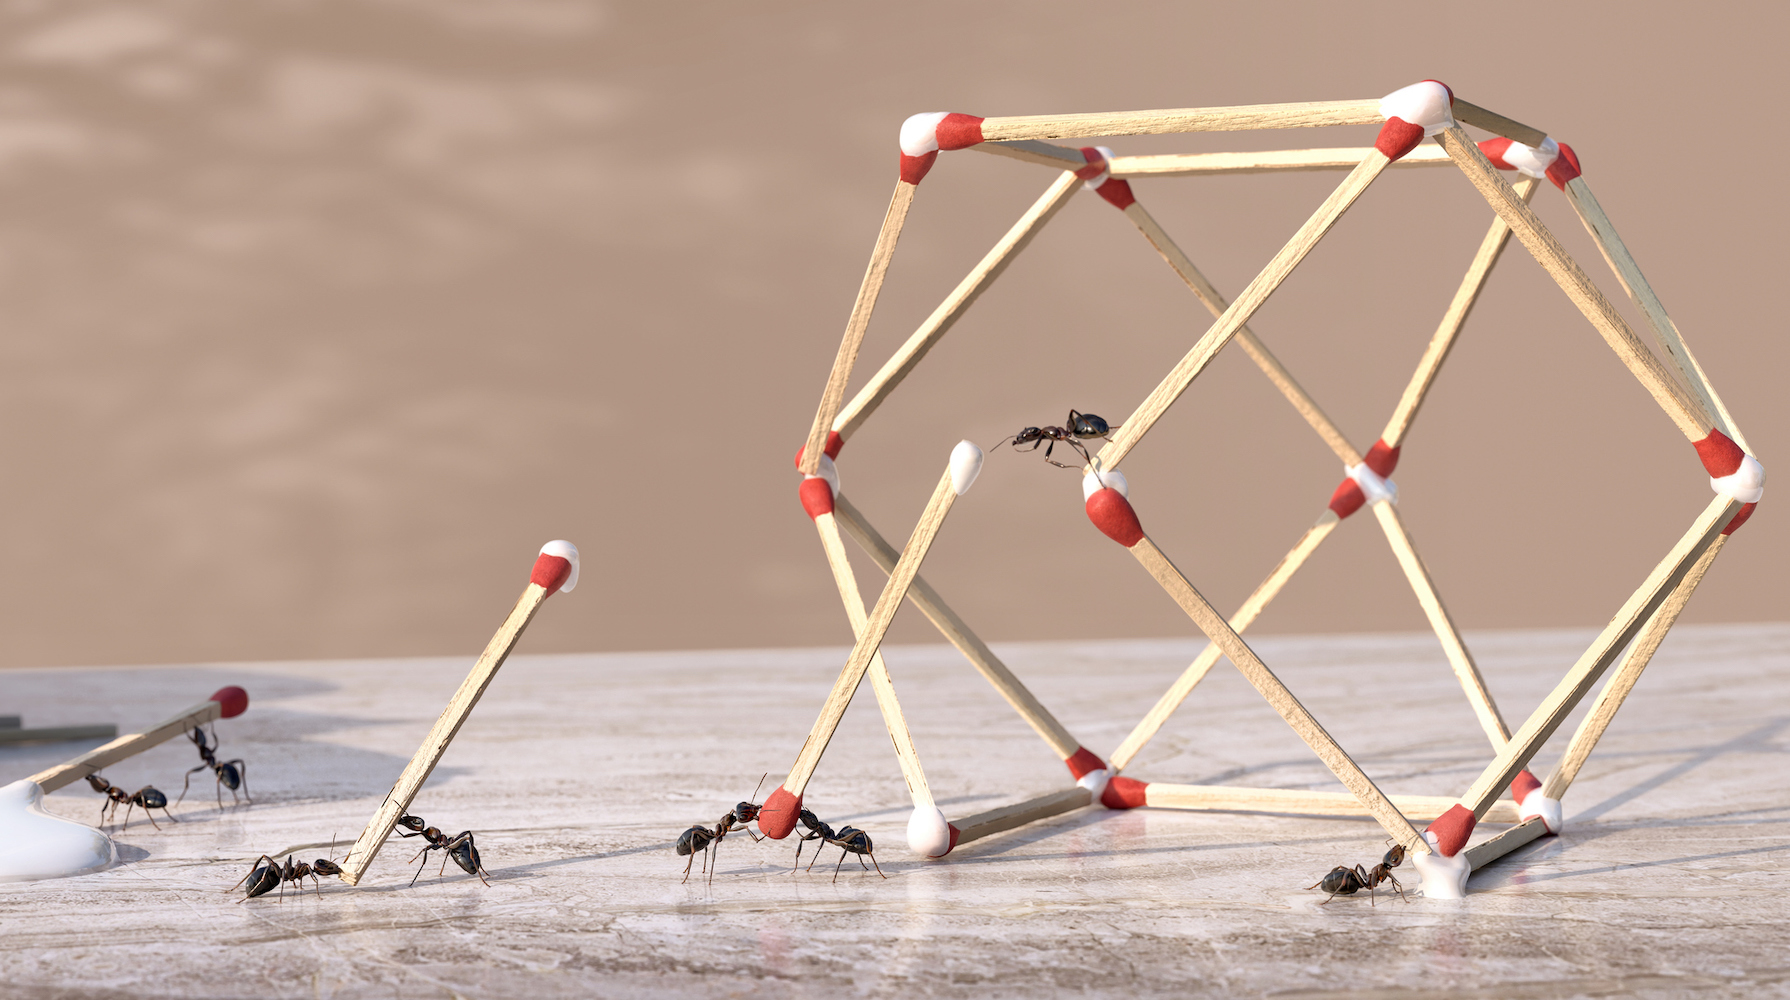 Un groupe de fourmis travaillant en équipe pour former une sculpture géométrique tridimensionnelle à partir de colle et d'allumettes.  Les fourmis sont des extrémités trempées d'allumettes dans de la colle dégoulinant d'une bouteille de colle et placées en position pour former la forme sur un plan de travail en marbre.